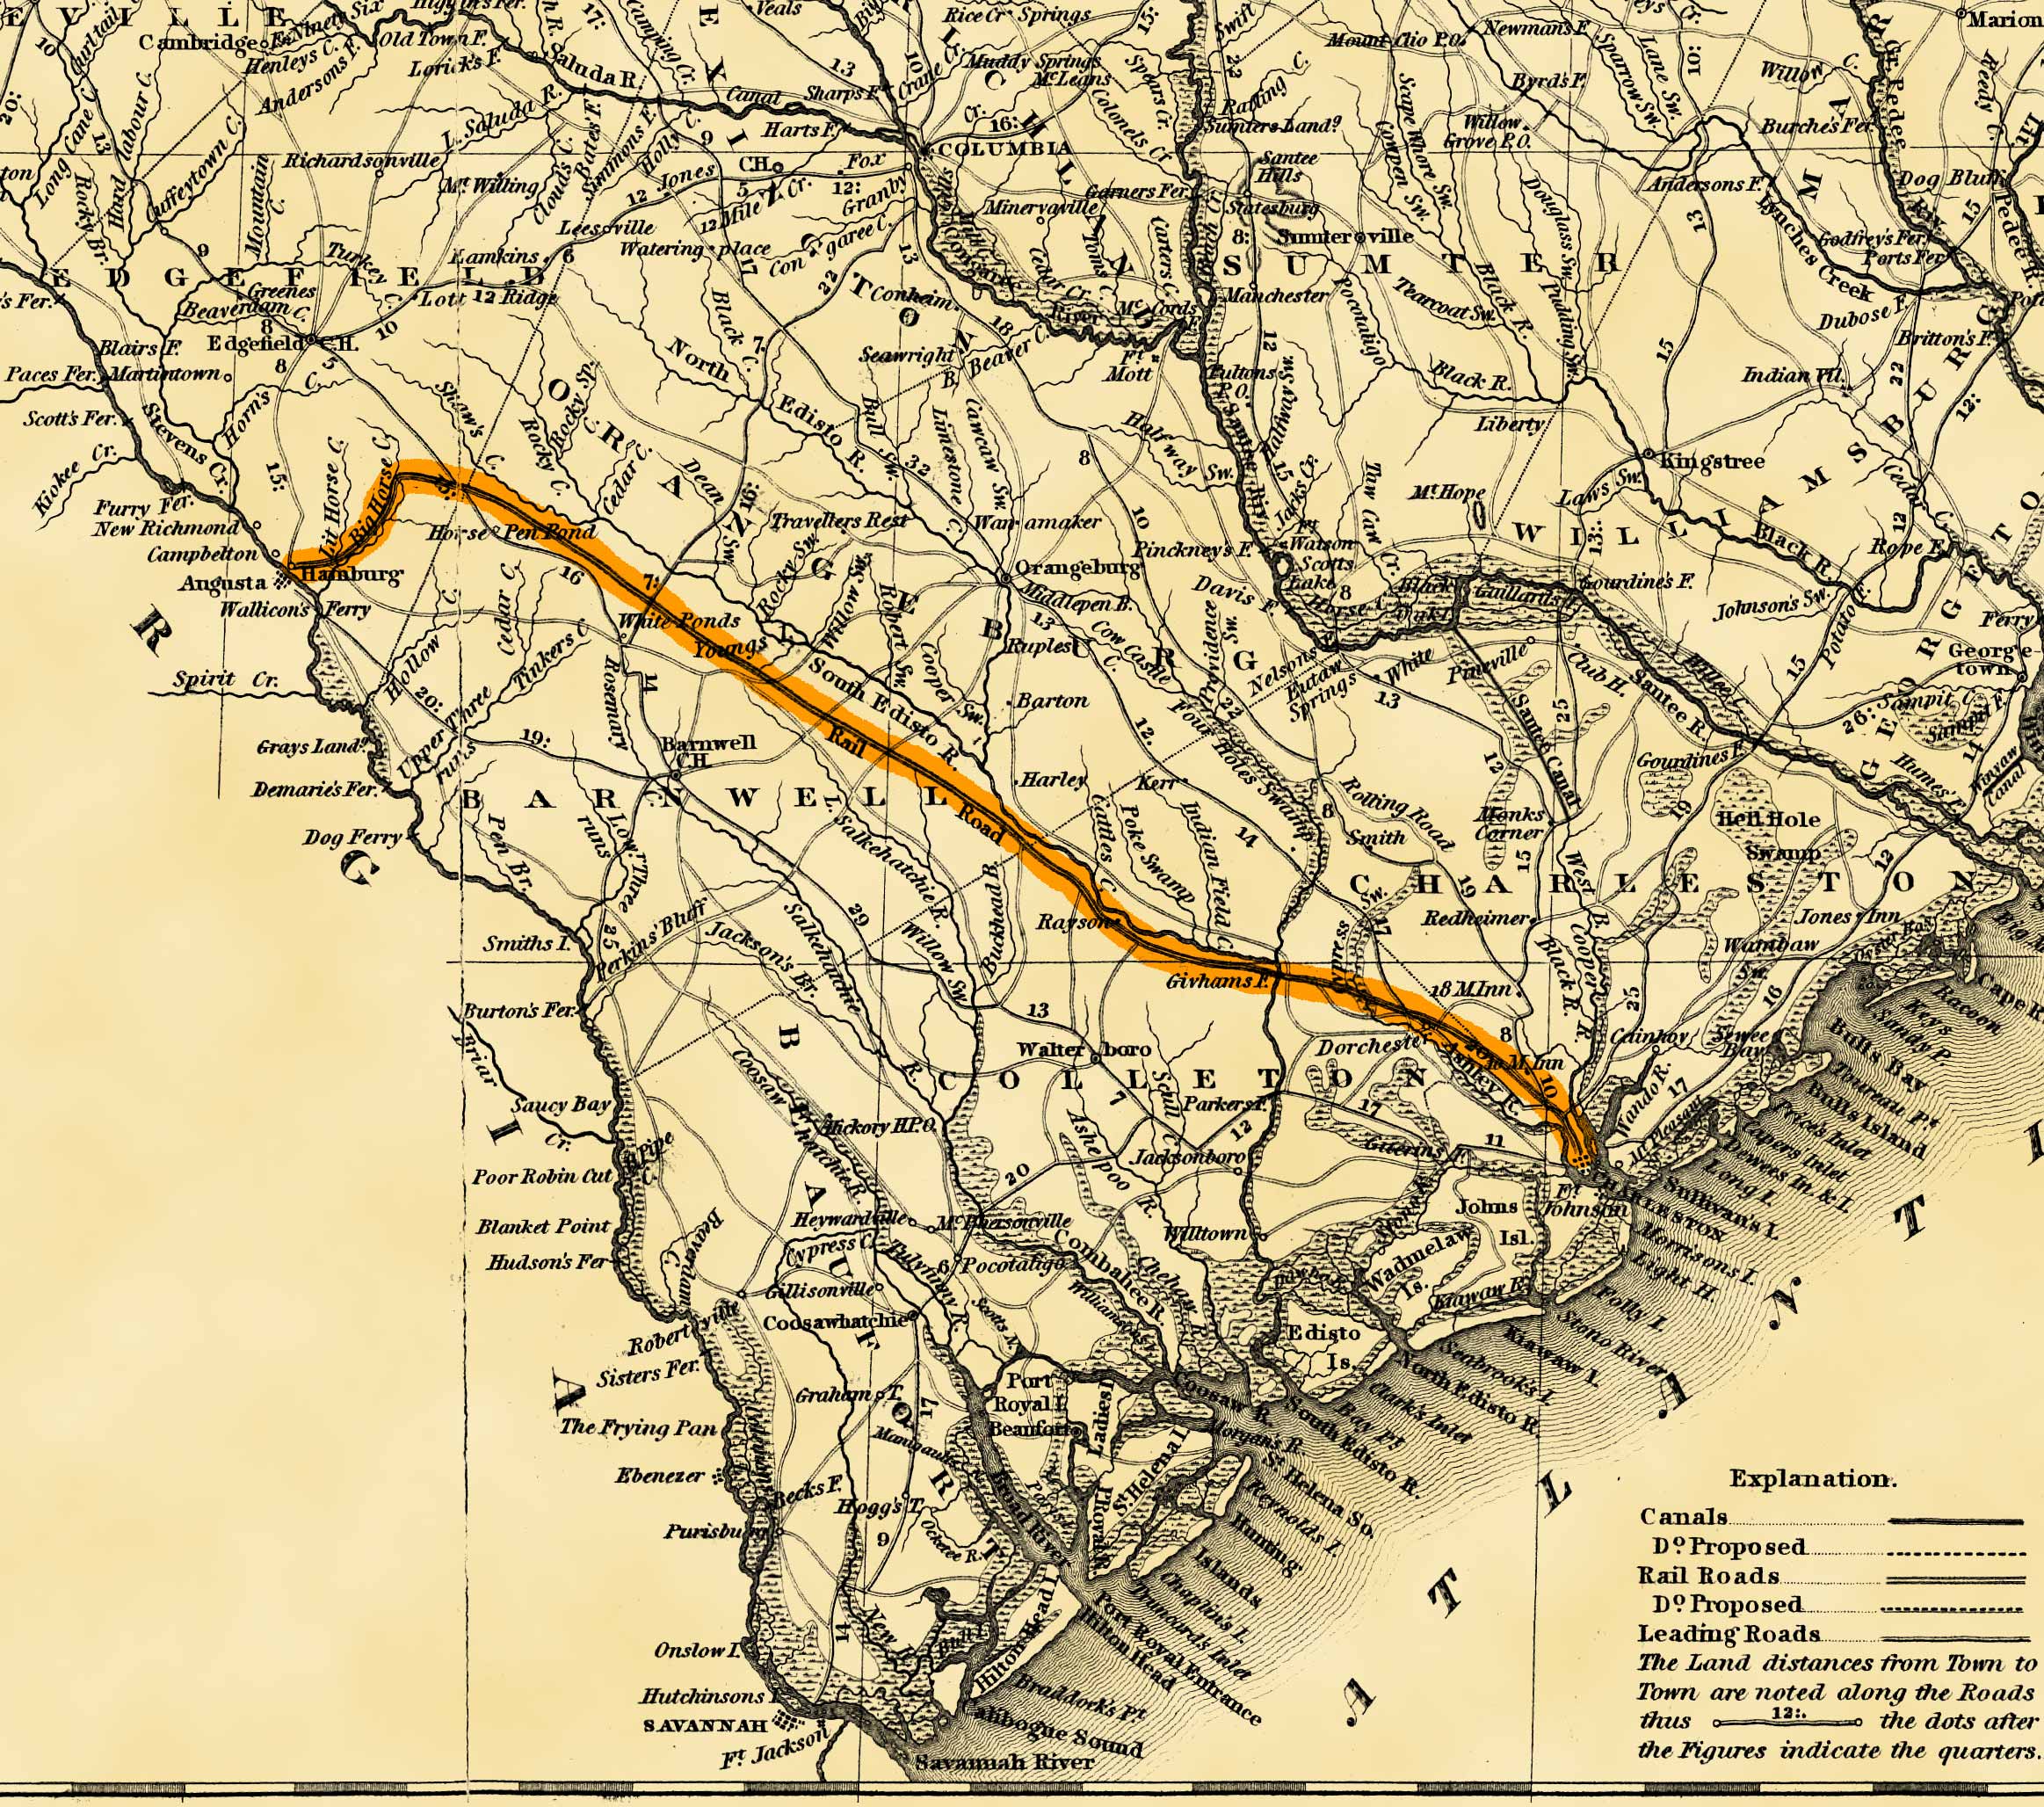 Charleston - Hamburg Railroad